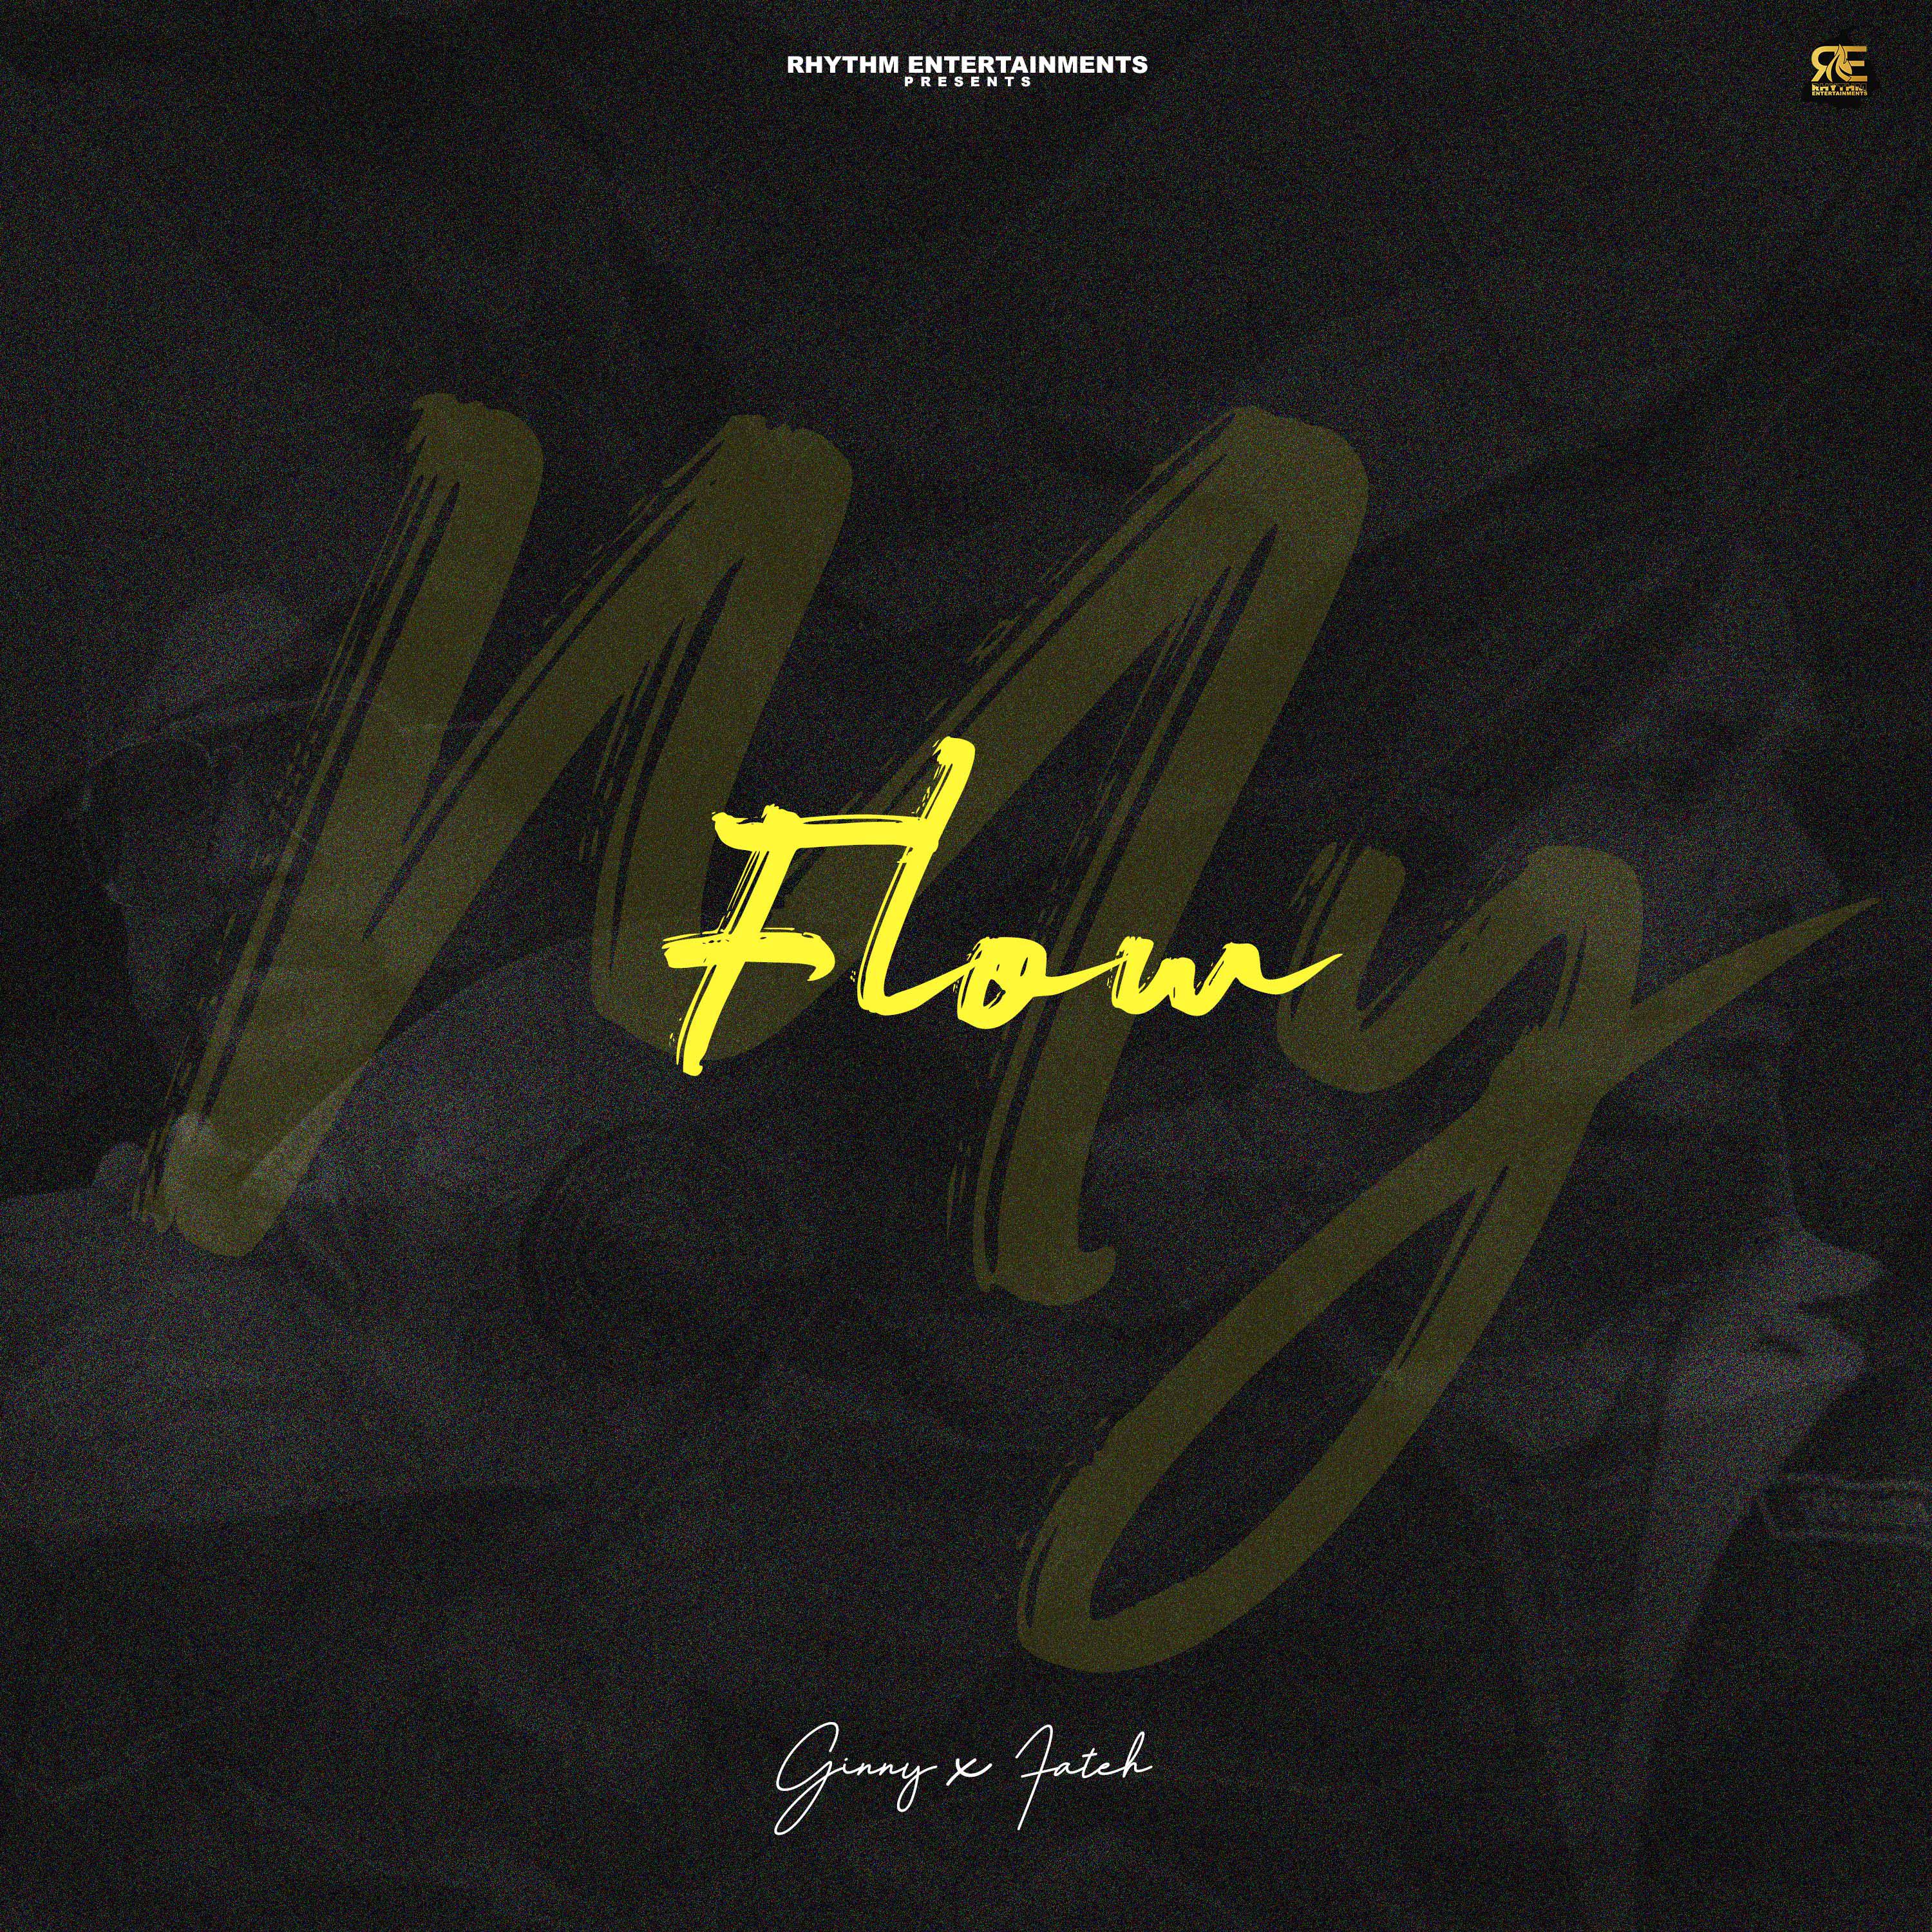 Постер альбома My Flow